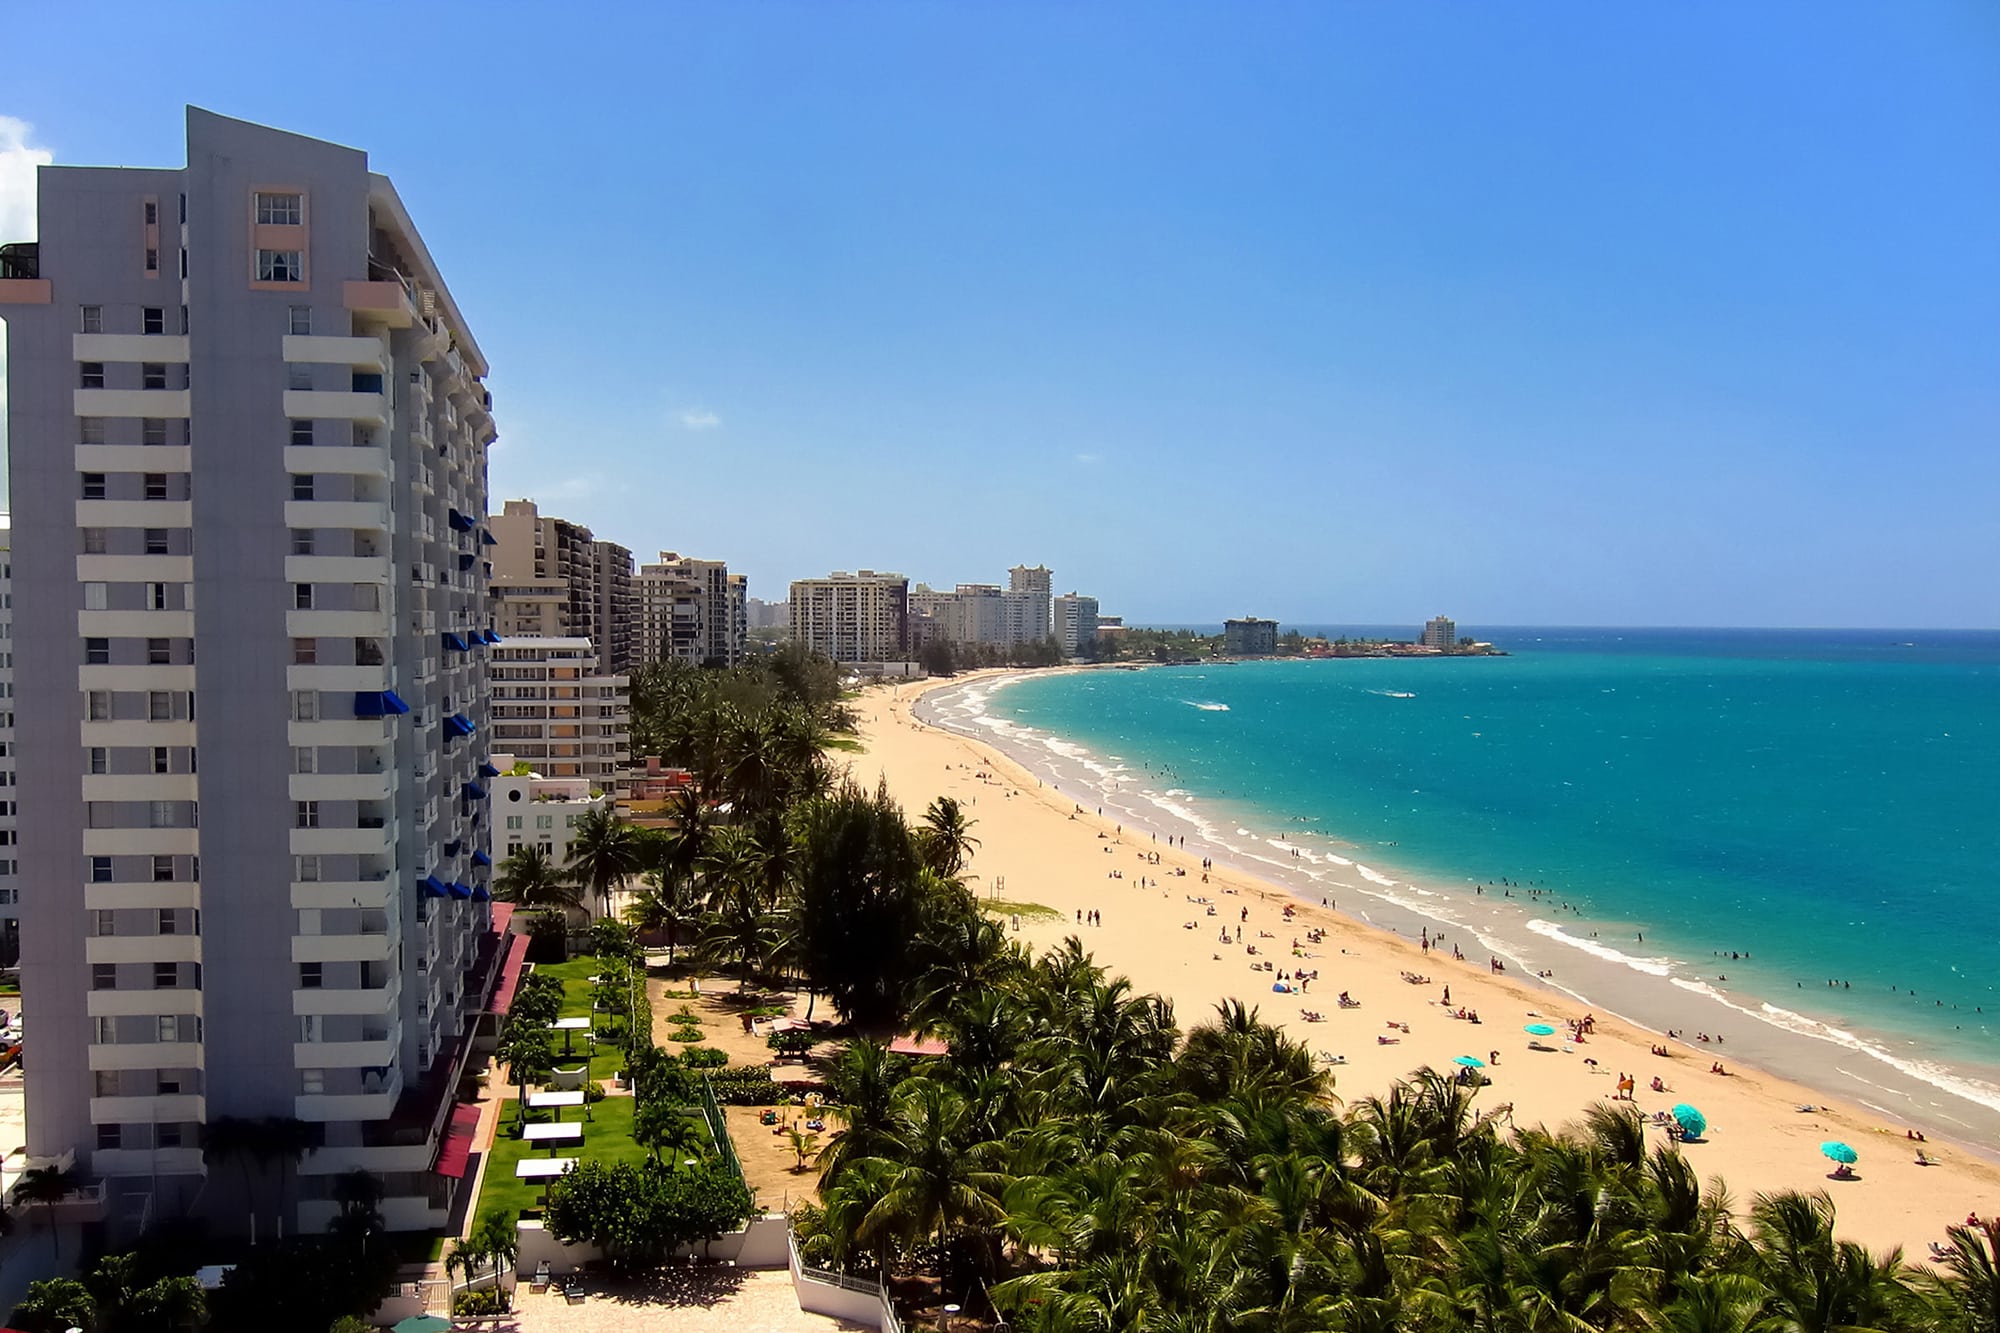 Top Puerto Rico Beaches: Isla Verde